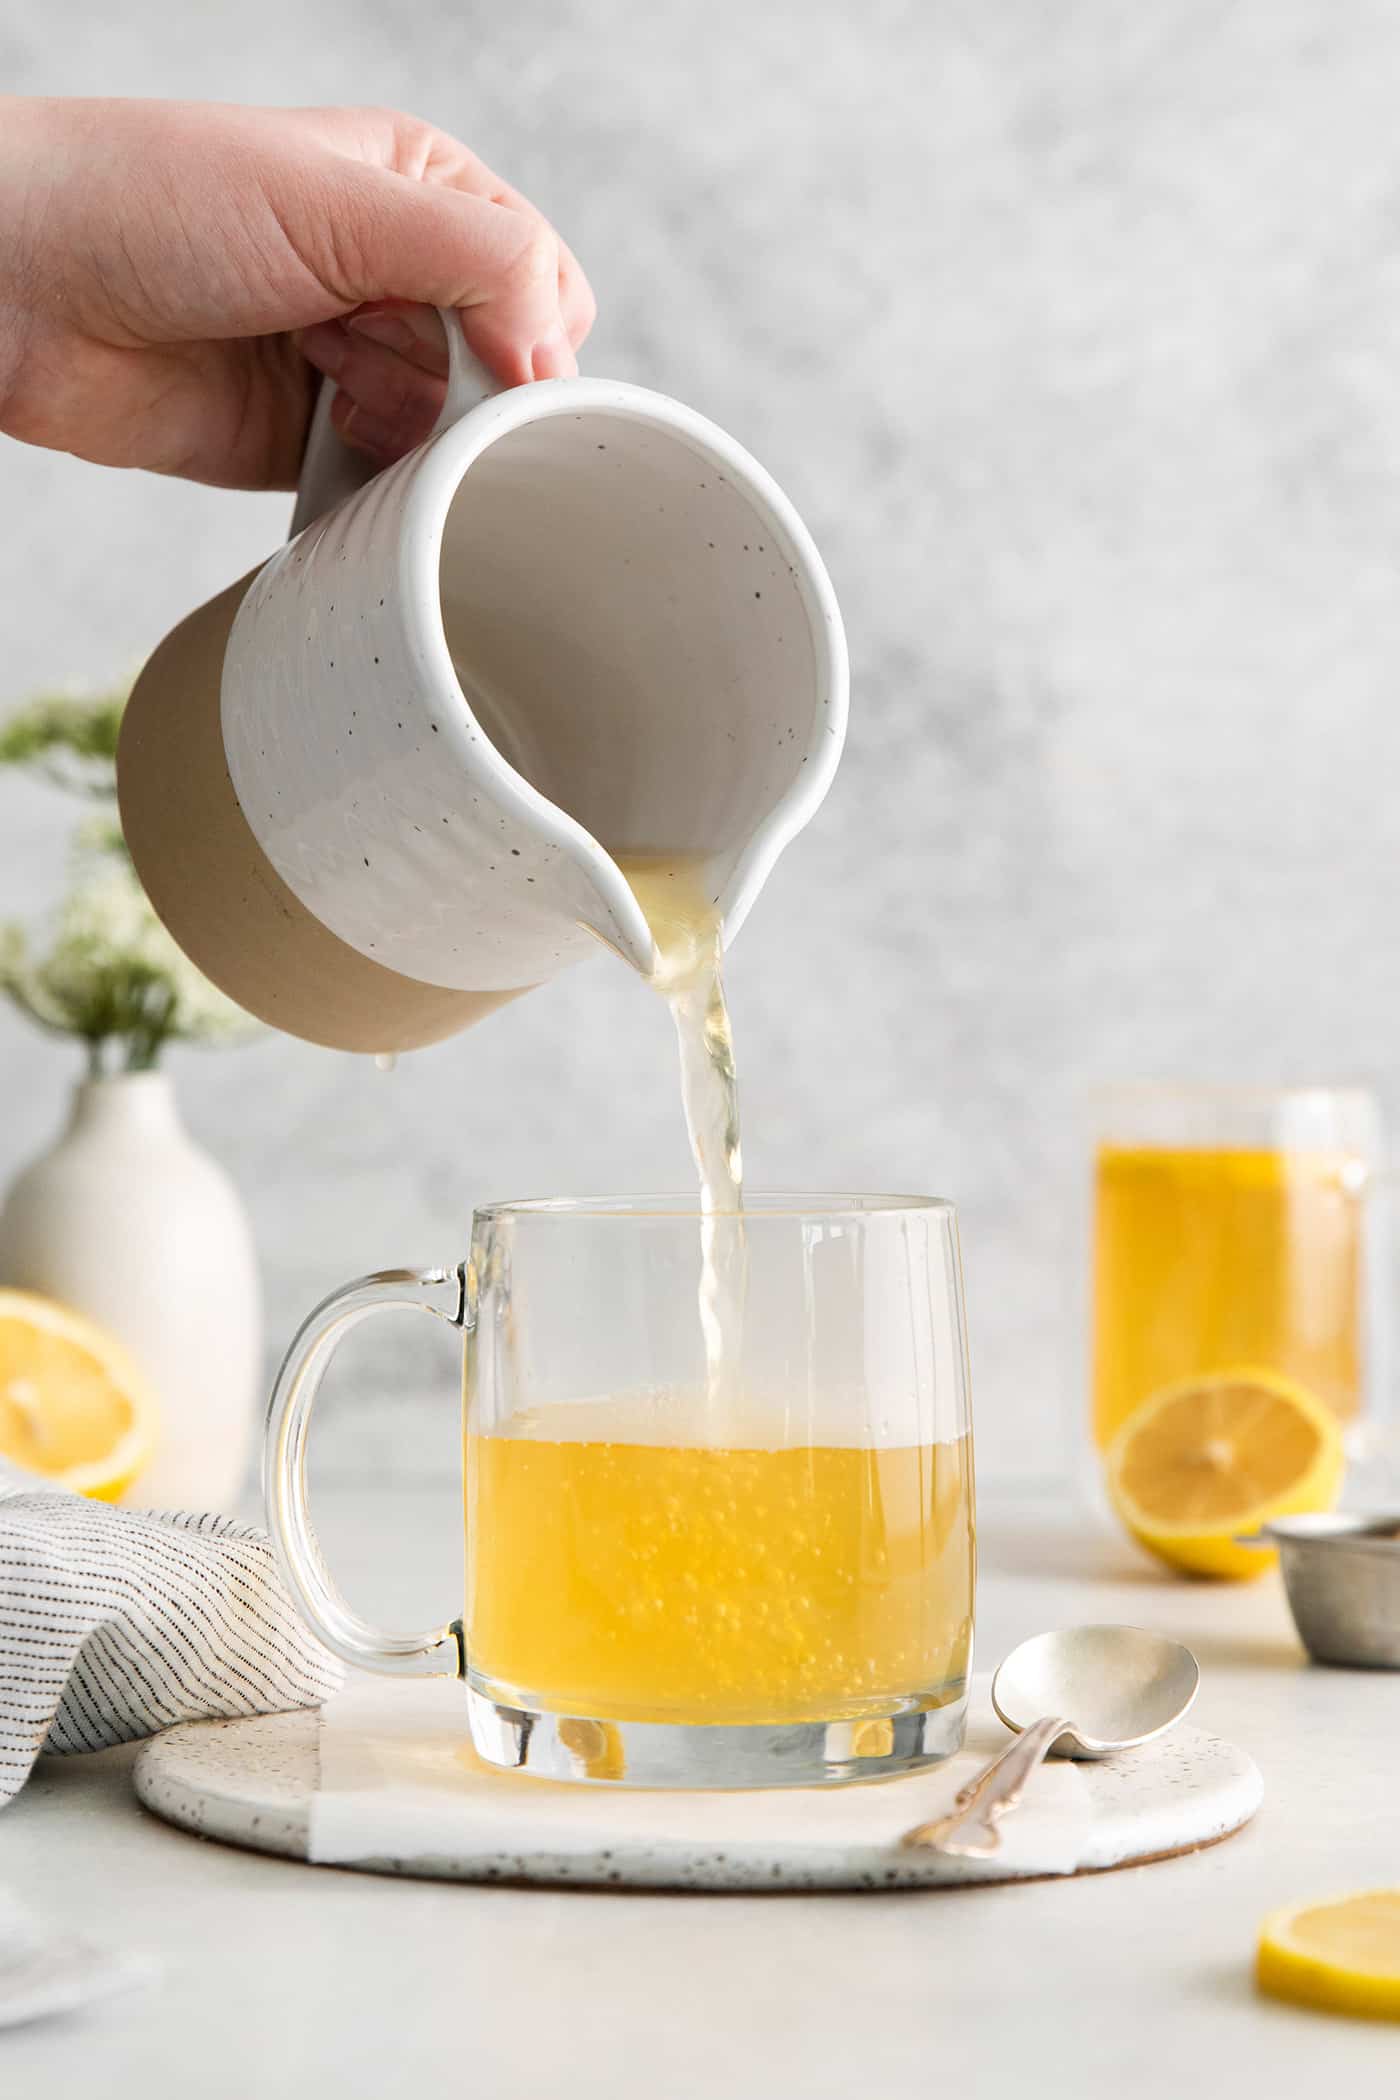 Tea being poured into a glass mug